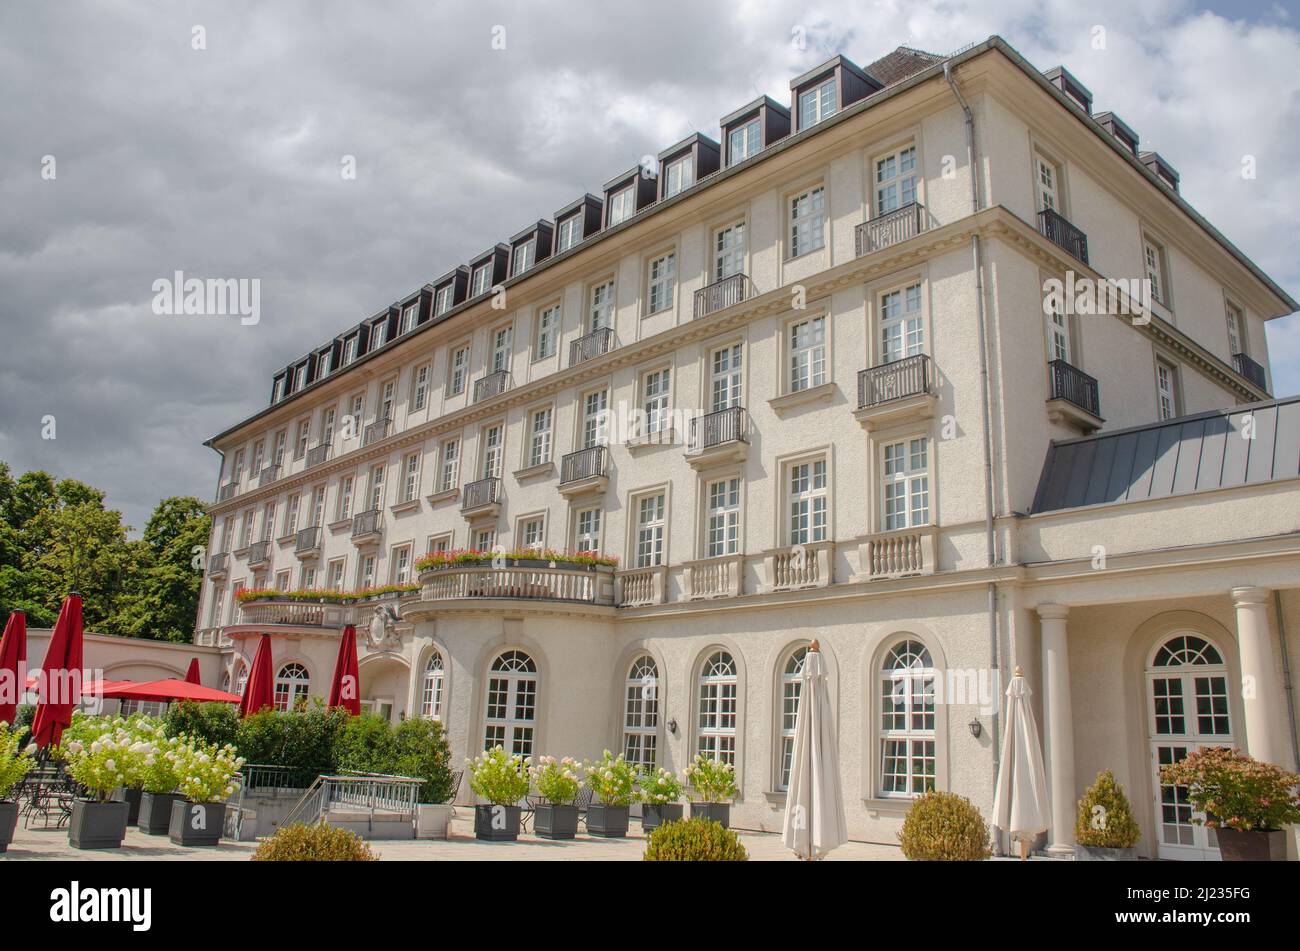 Der Quellenhof in Aachen war eines der bekanntesten Kurhotels in Deutschland in der ersten Hälfte des 20. Jahrhunderts. Foto Stock